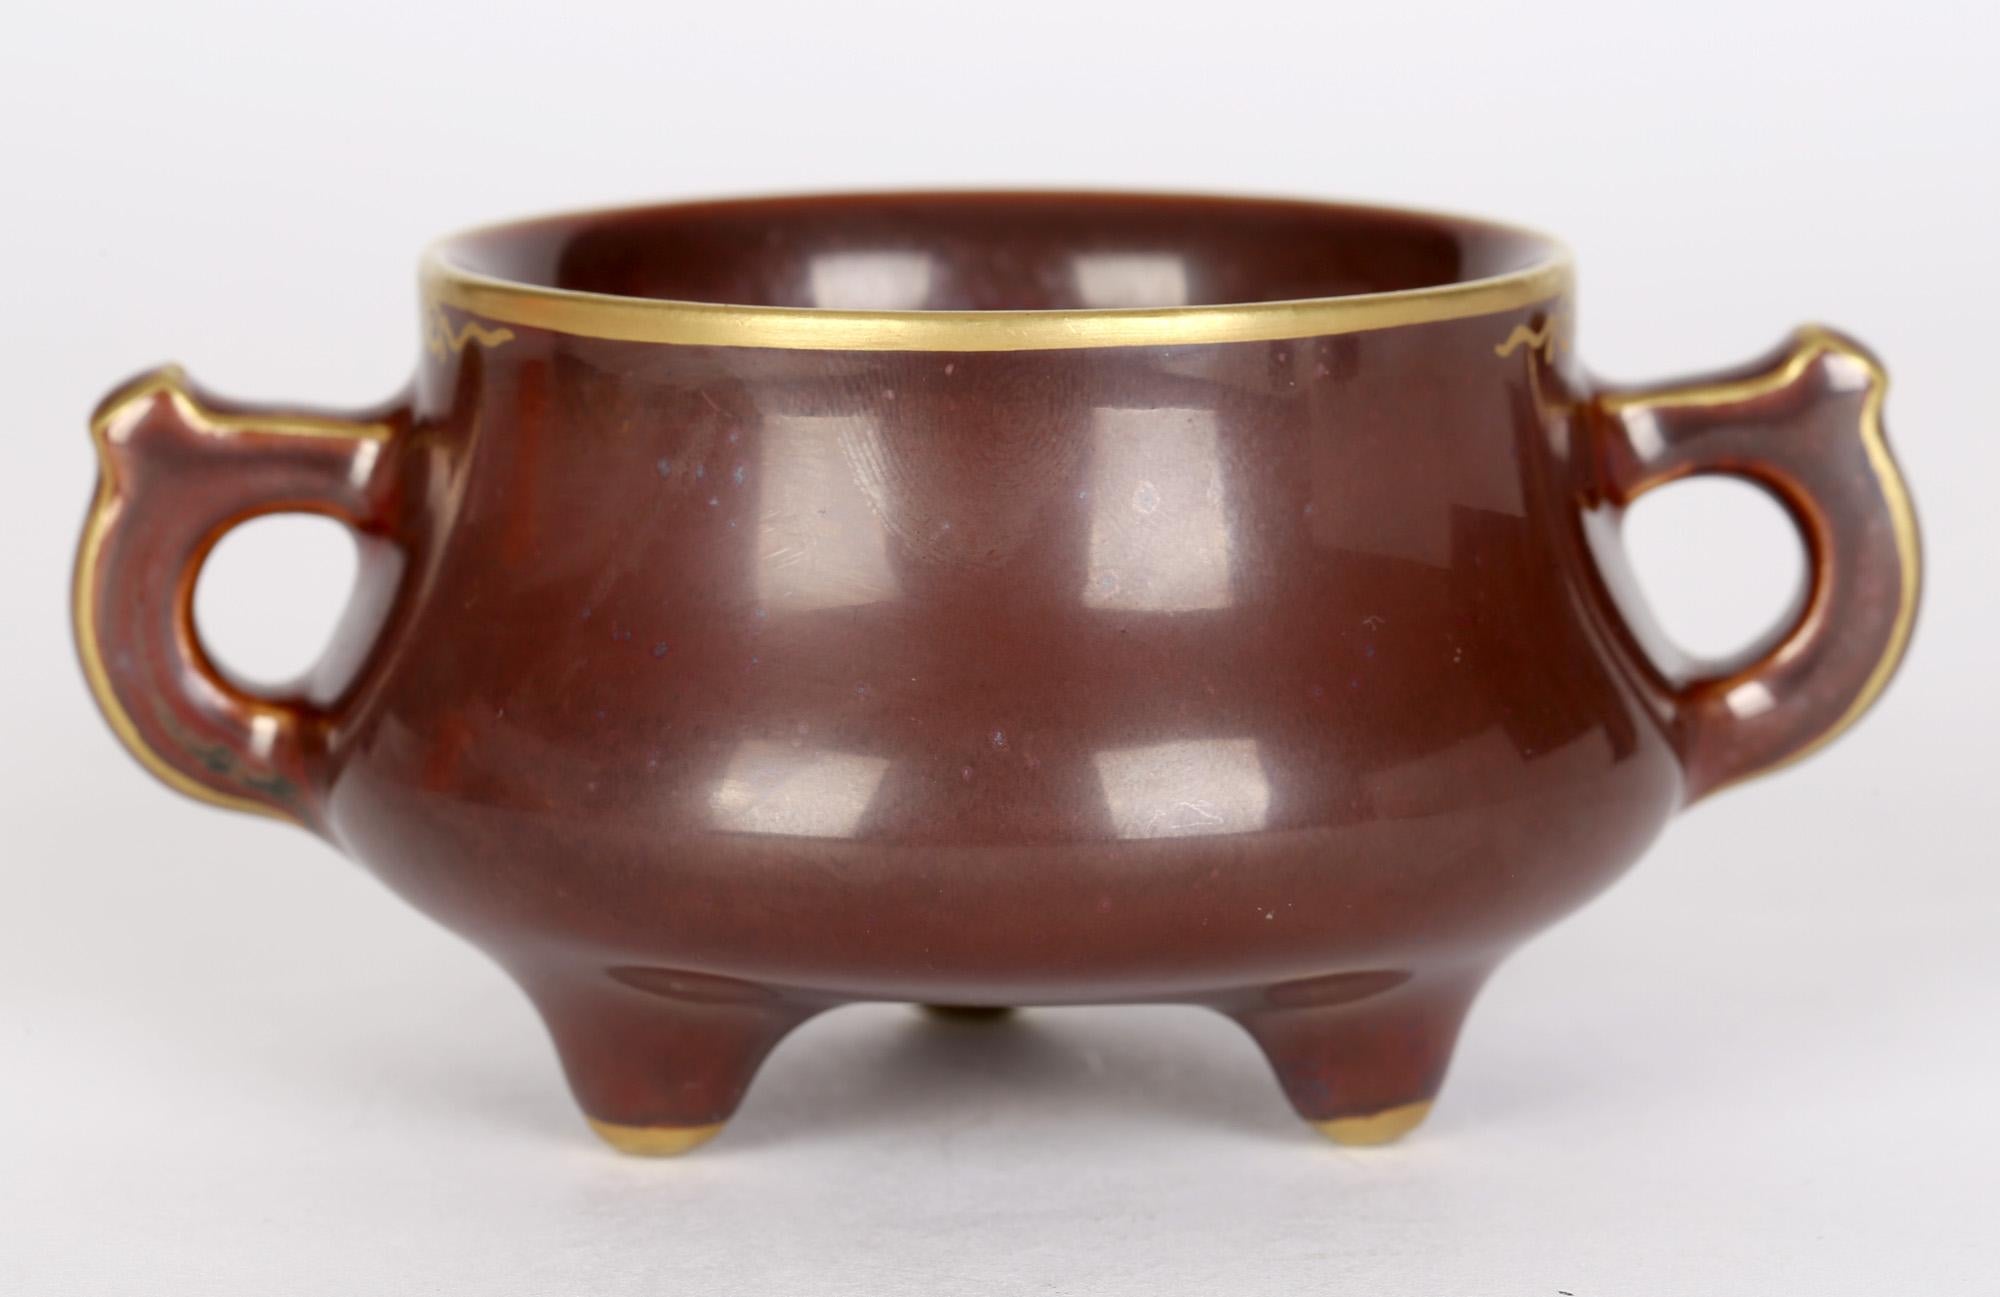 Encensoir en porcelaine à deux anses de très belle qualité, de marque Qianlong, décoré de glaçures brun rouge profond avec des reflets dorés et datant probablement du XXe siècle. Cette pièce élégante et de qualité repose sur trois pieds courts avec